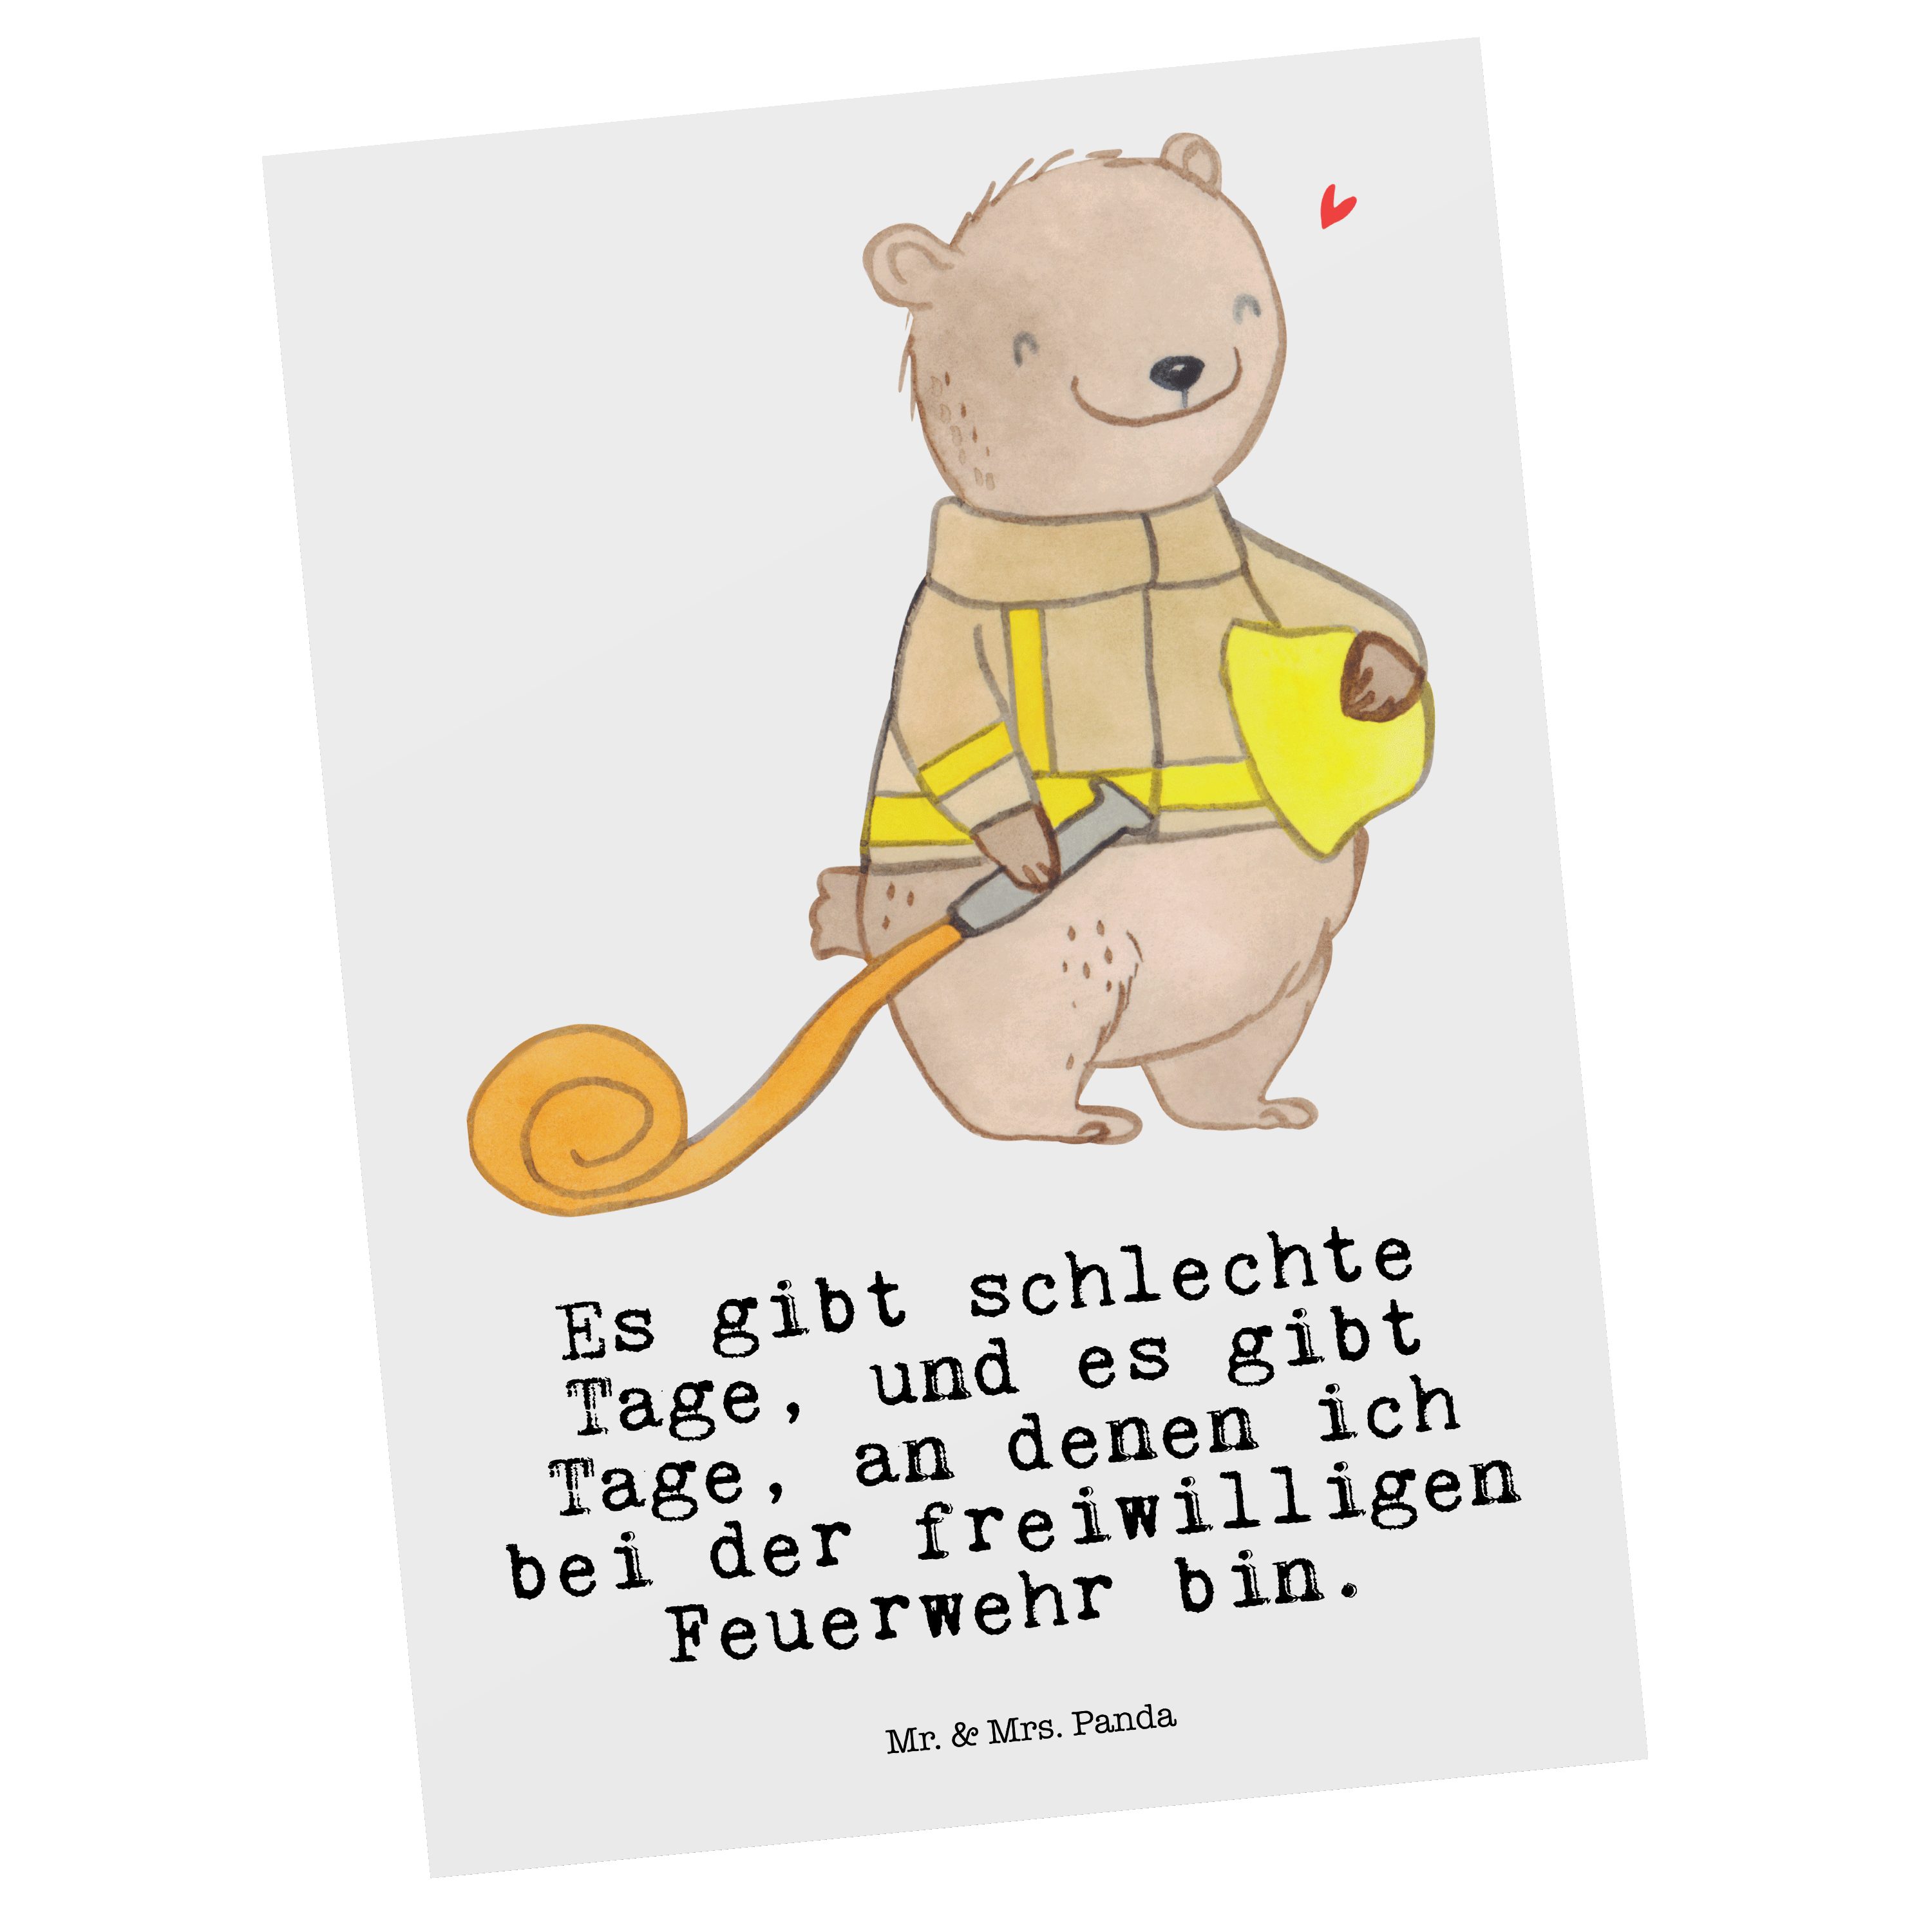 Mr. & Mrs. Panda Postkarte Bär Freiwillige Feuerwehr Tage - Weiß - Geschenk, Hobby, Feuerwehrein